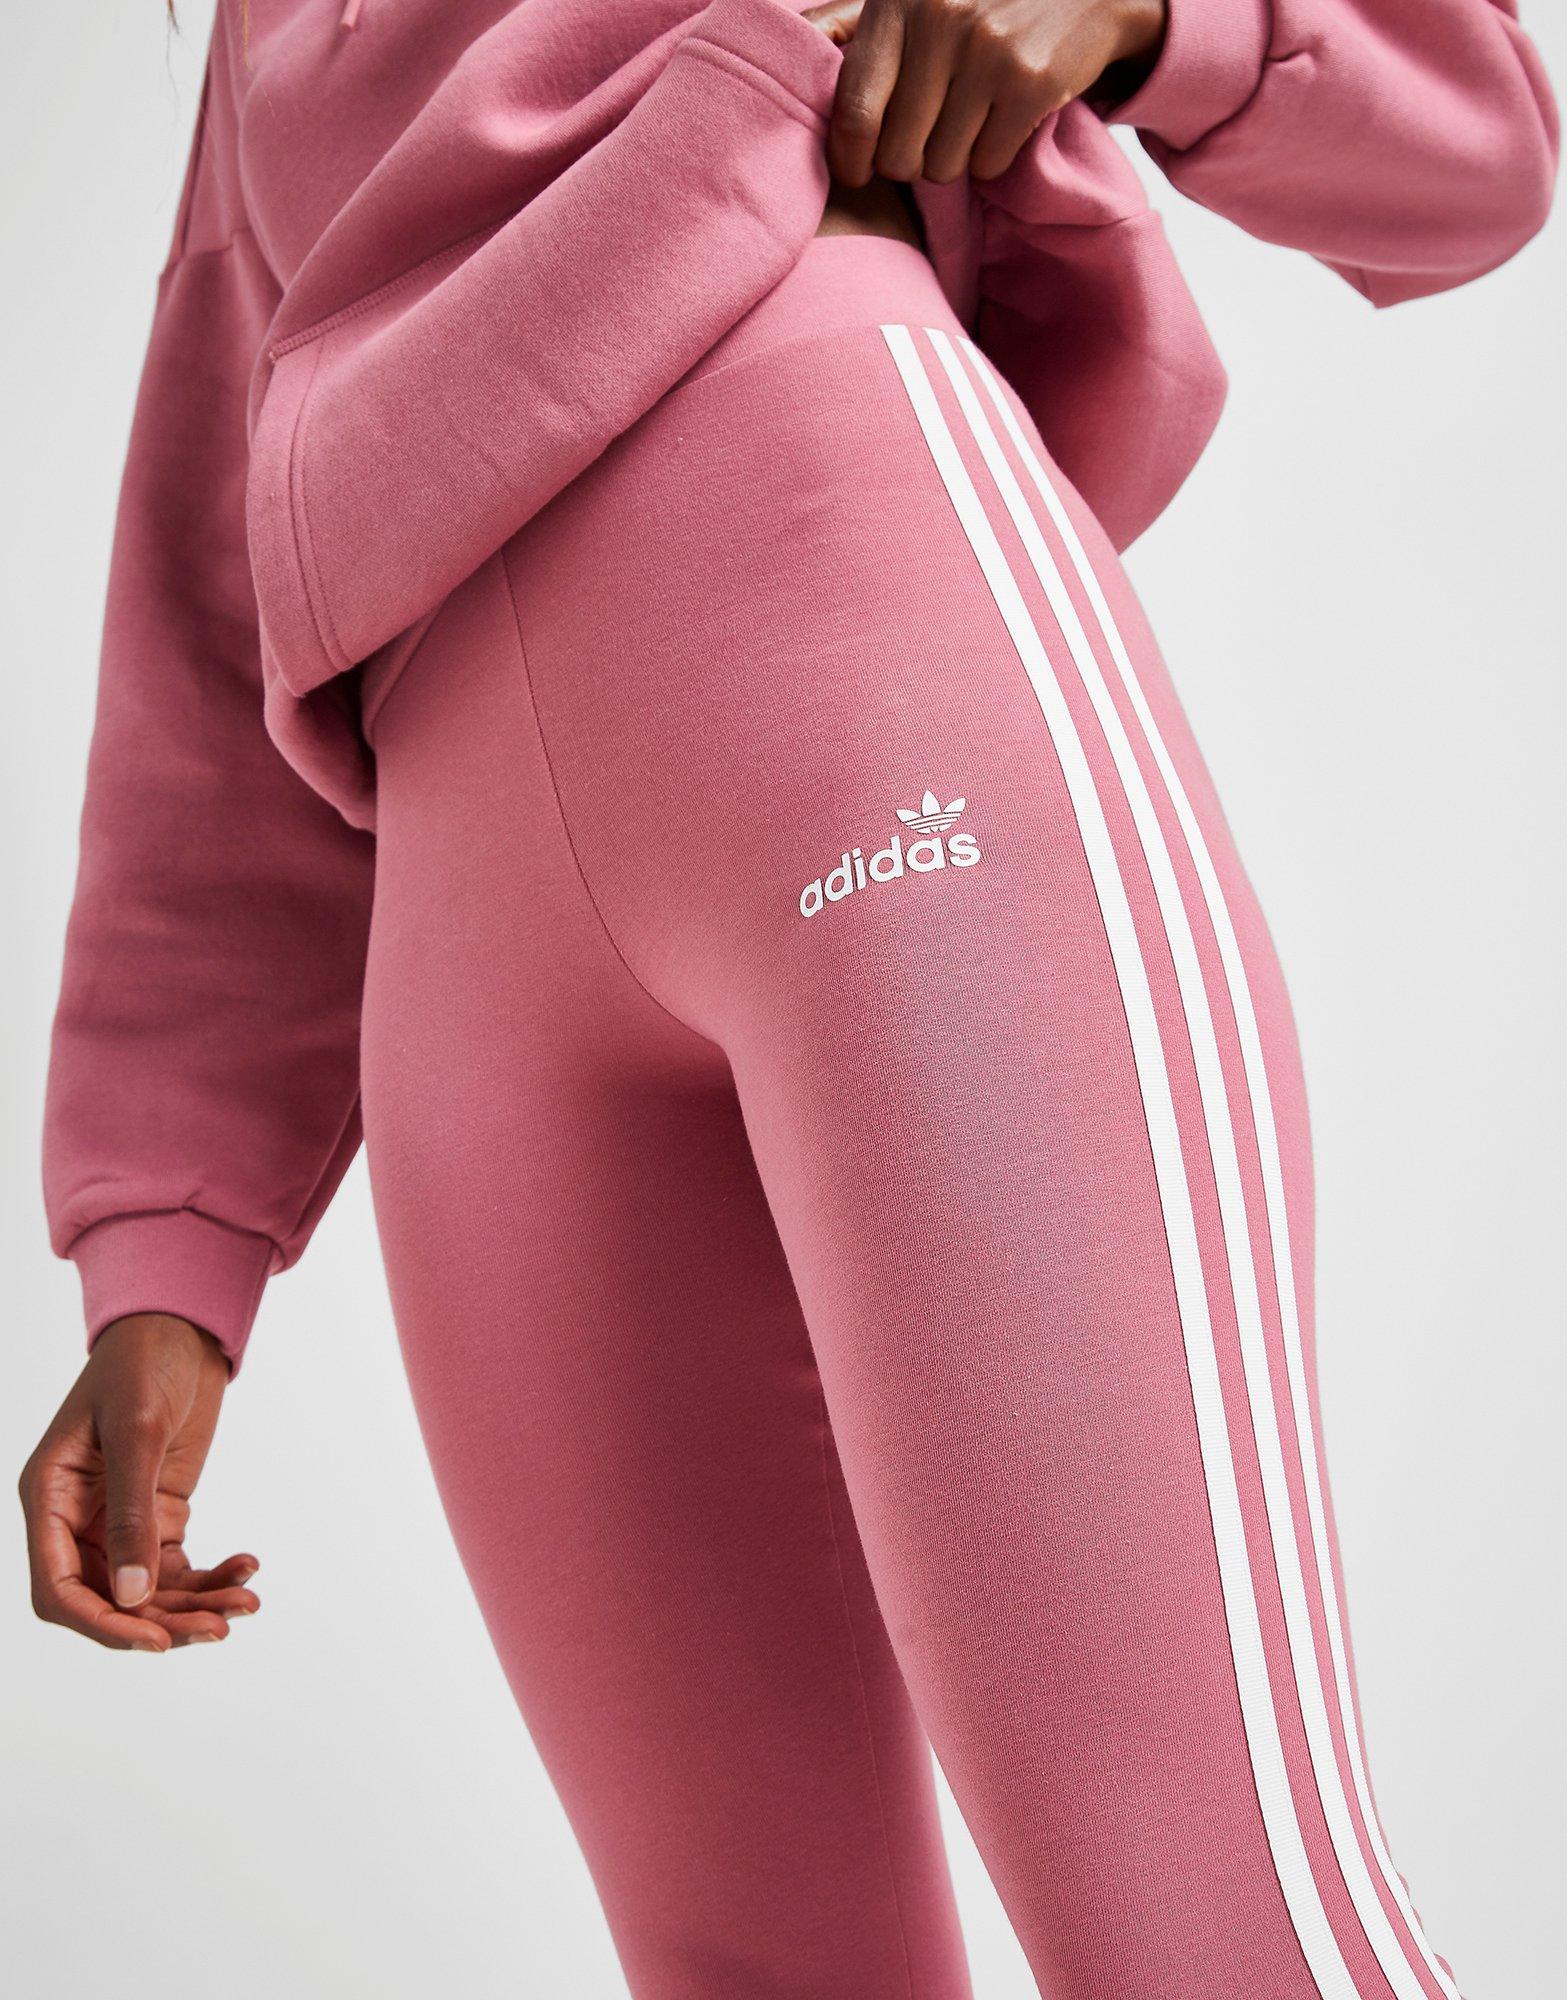 adidas leggings pink